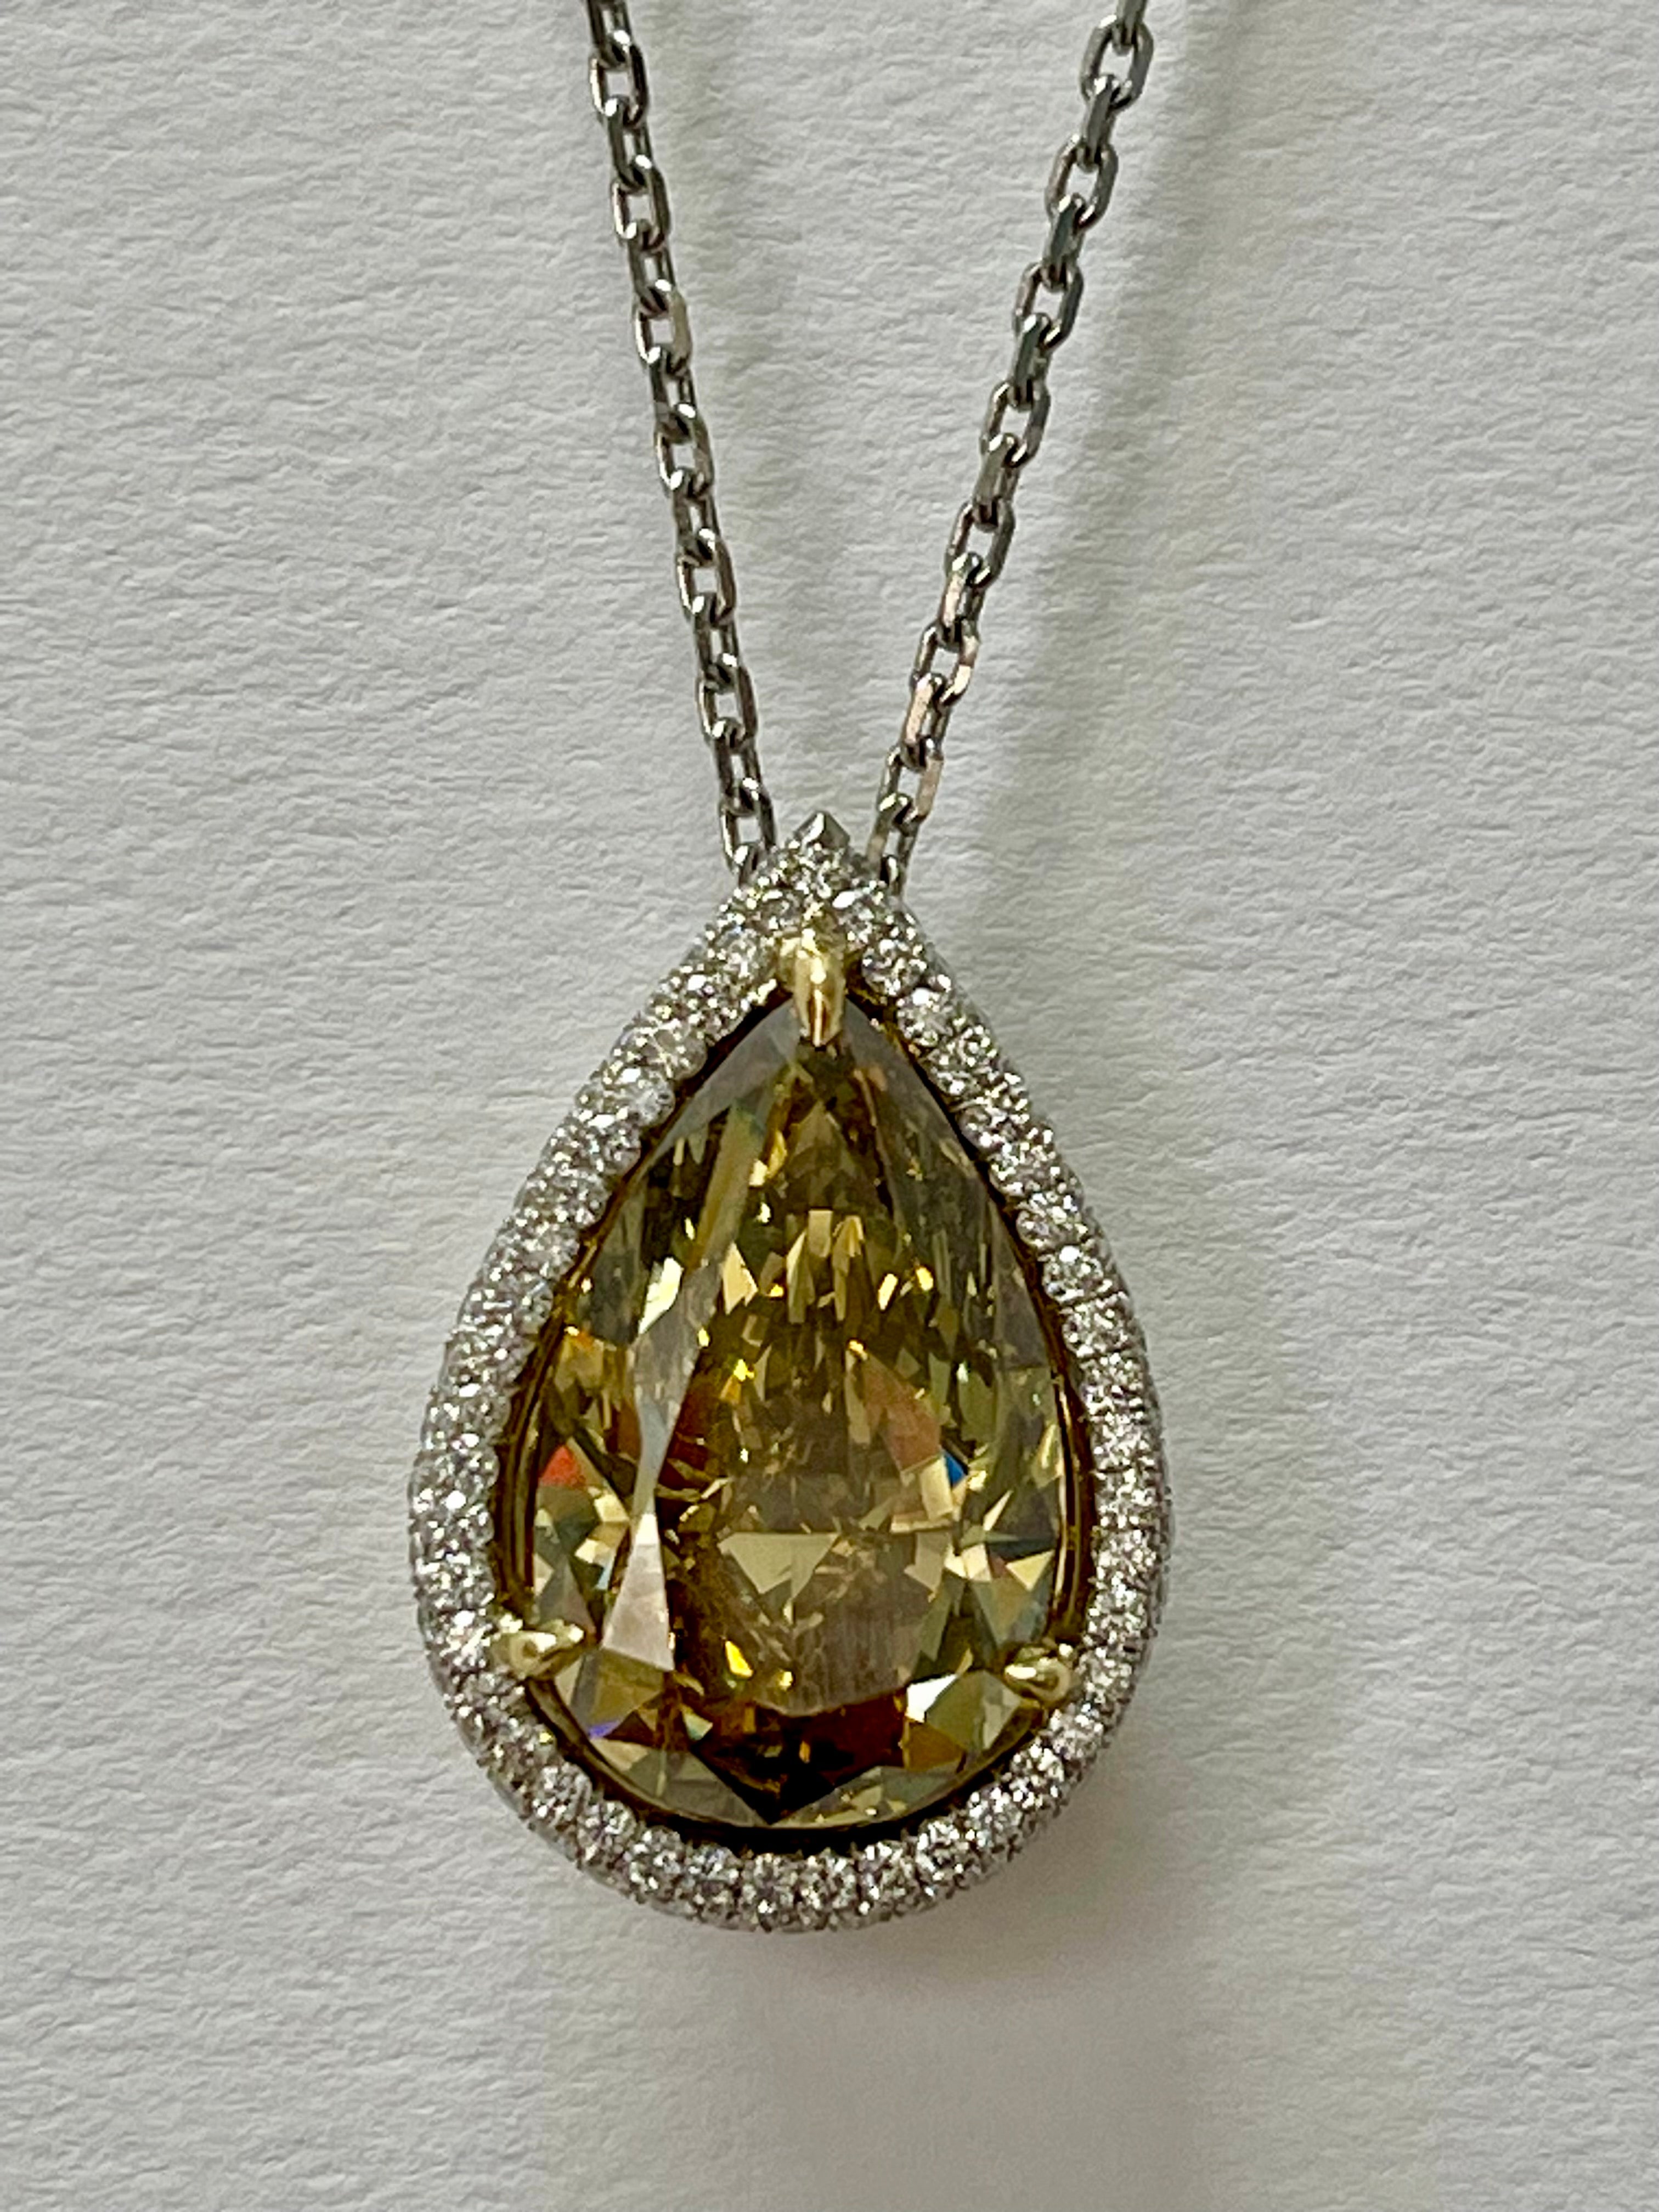 Ce collier de diamants en forme de poire de 12,11 carats, certifié par le GIA, de couleur brun foncé et jaune verdâtre, est magnifiquement réalisé à la main en or jaune et blanc 18 carats. 

Les détails sont les suivants : 

Diamant poire : 12,11